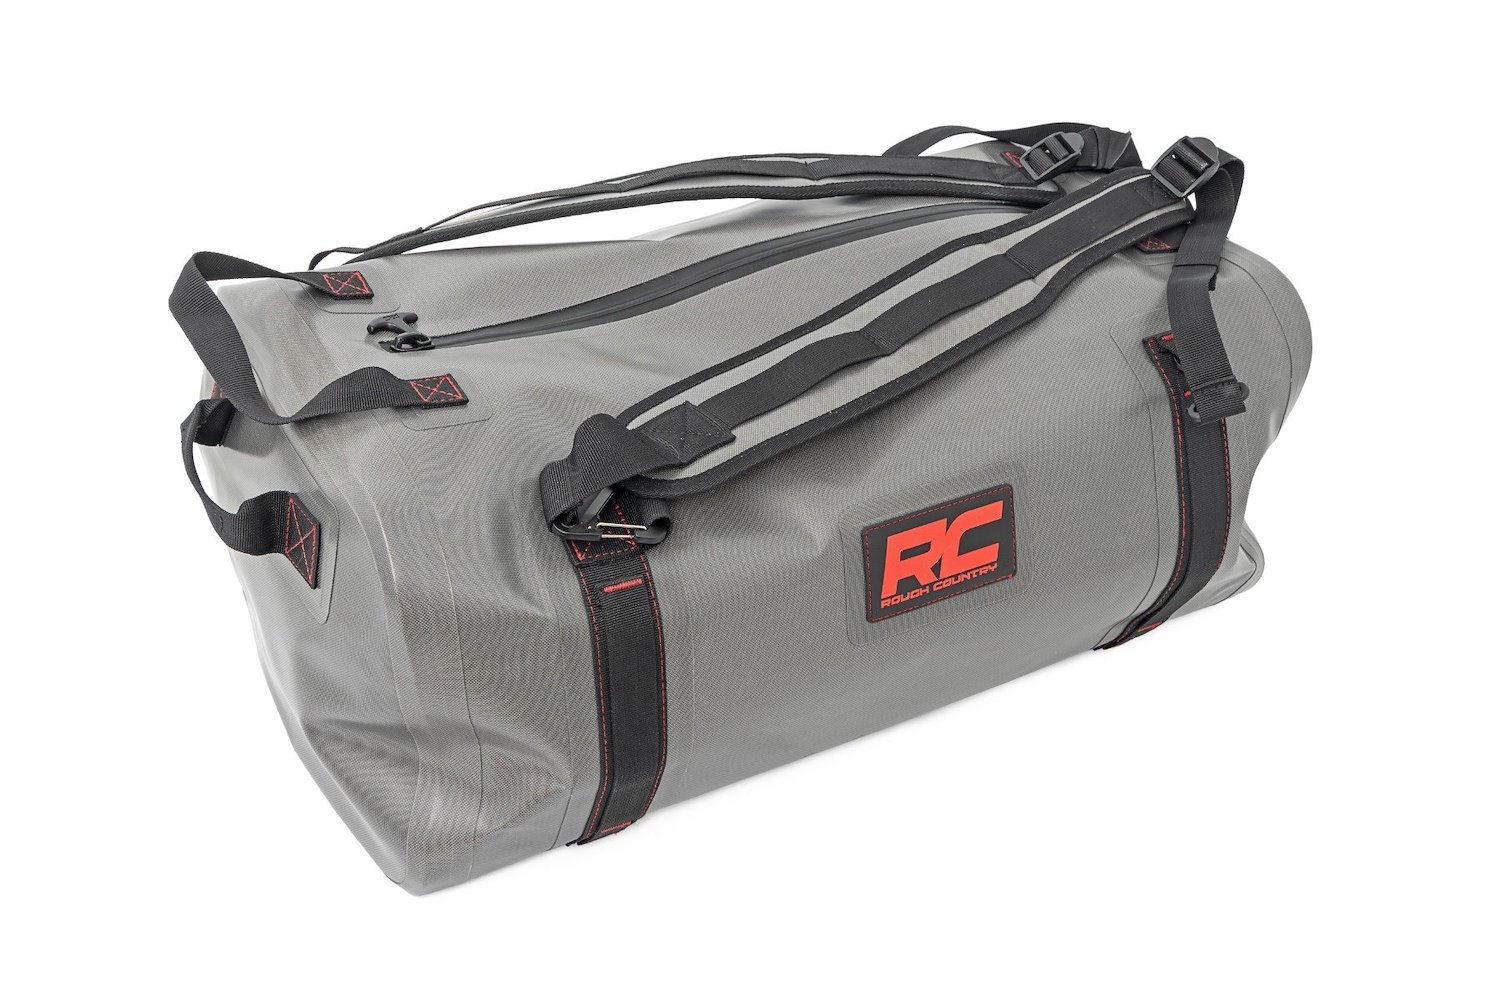 99031 Waterproof Duffle Bag, 50L, Puncture Resistant Material